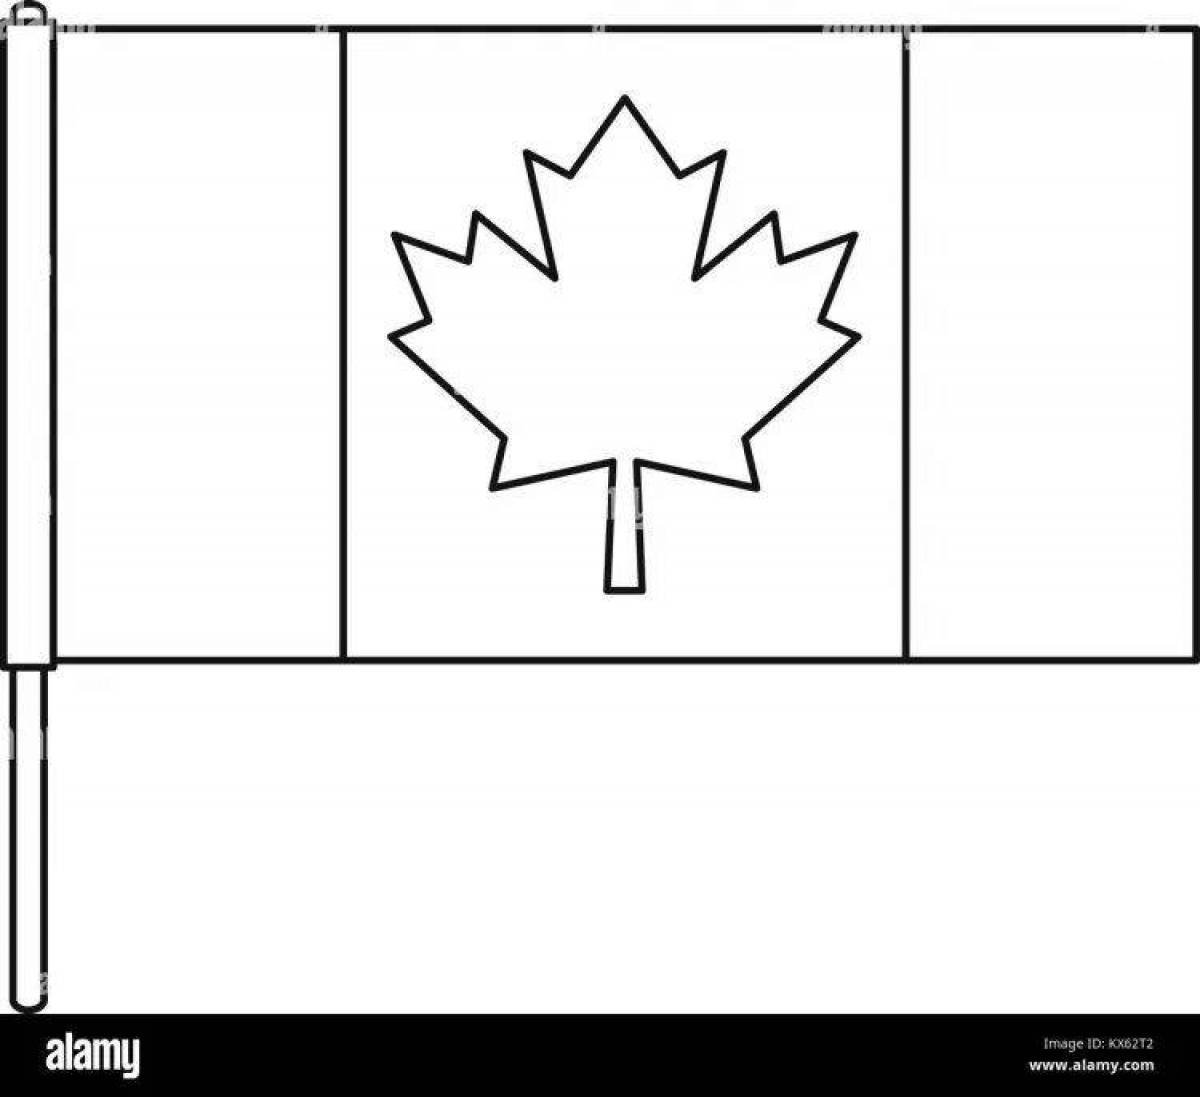 Раскраска величественный канадский флаг